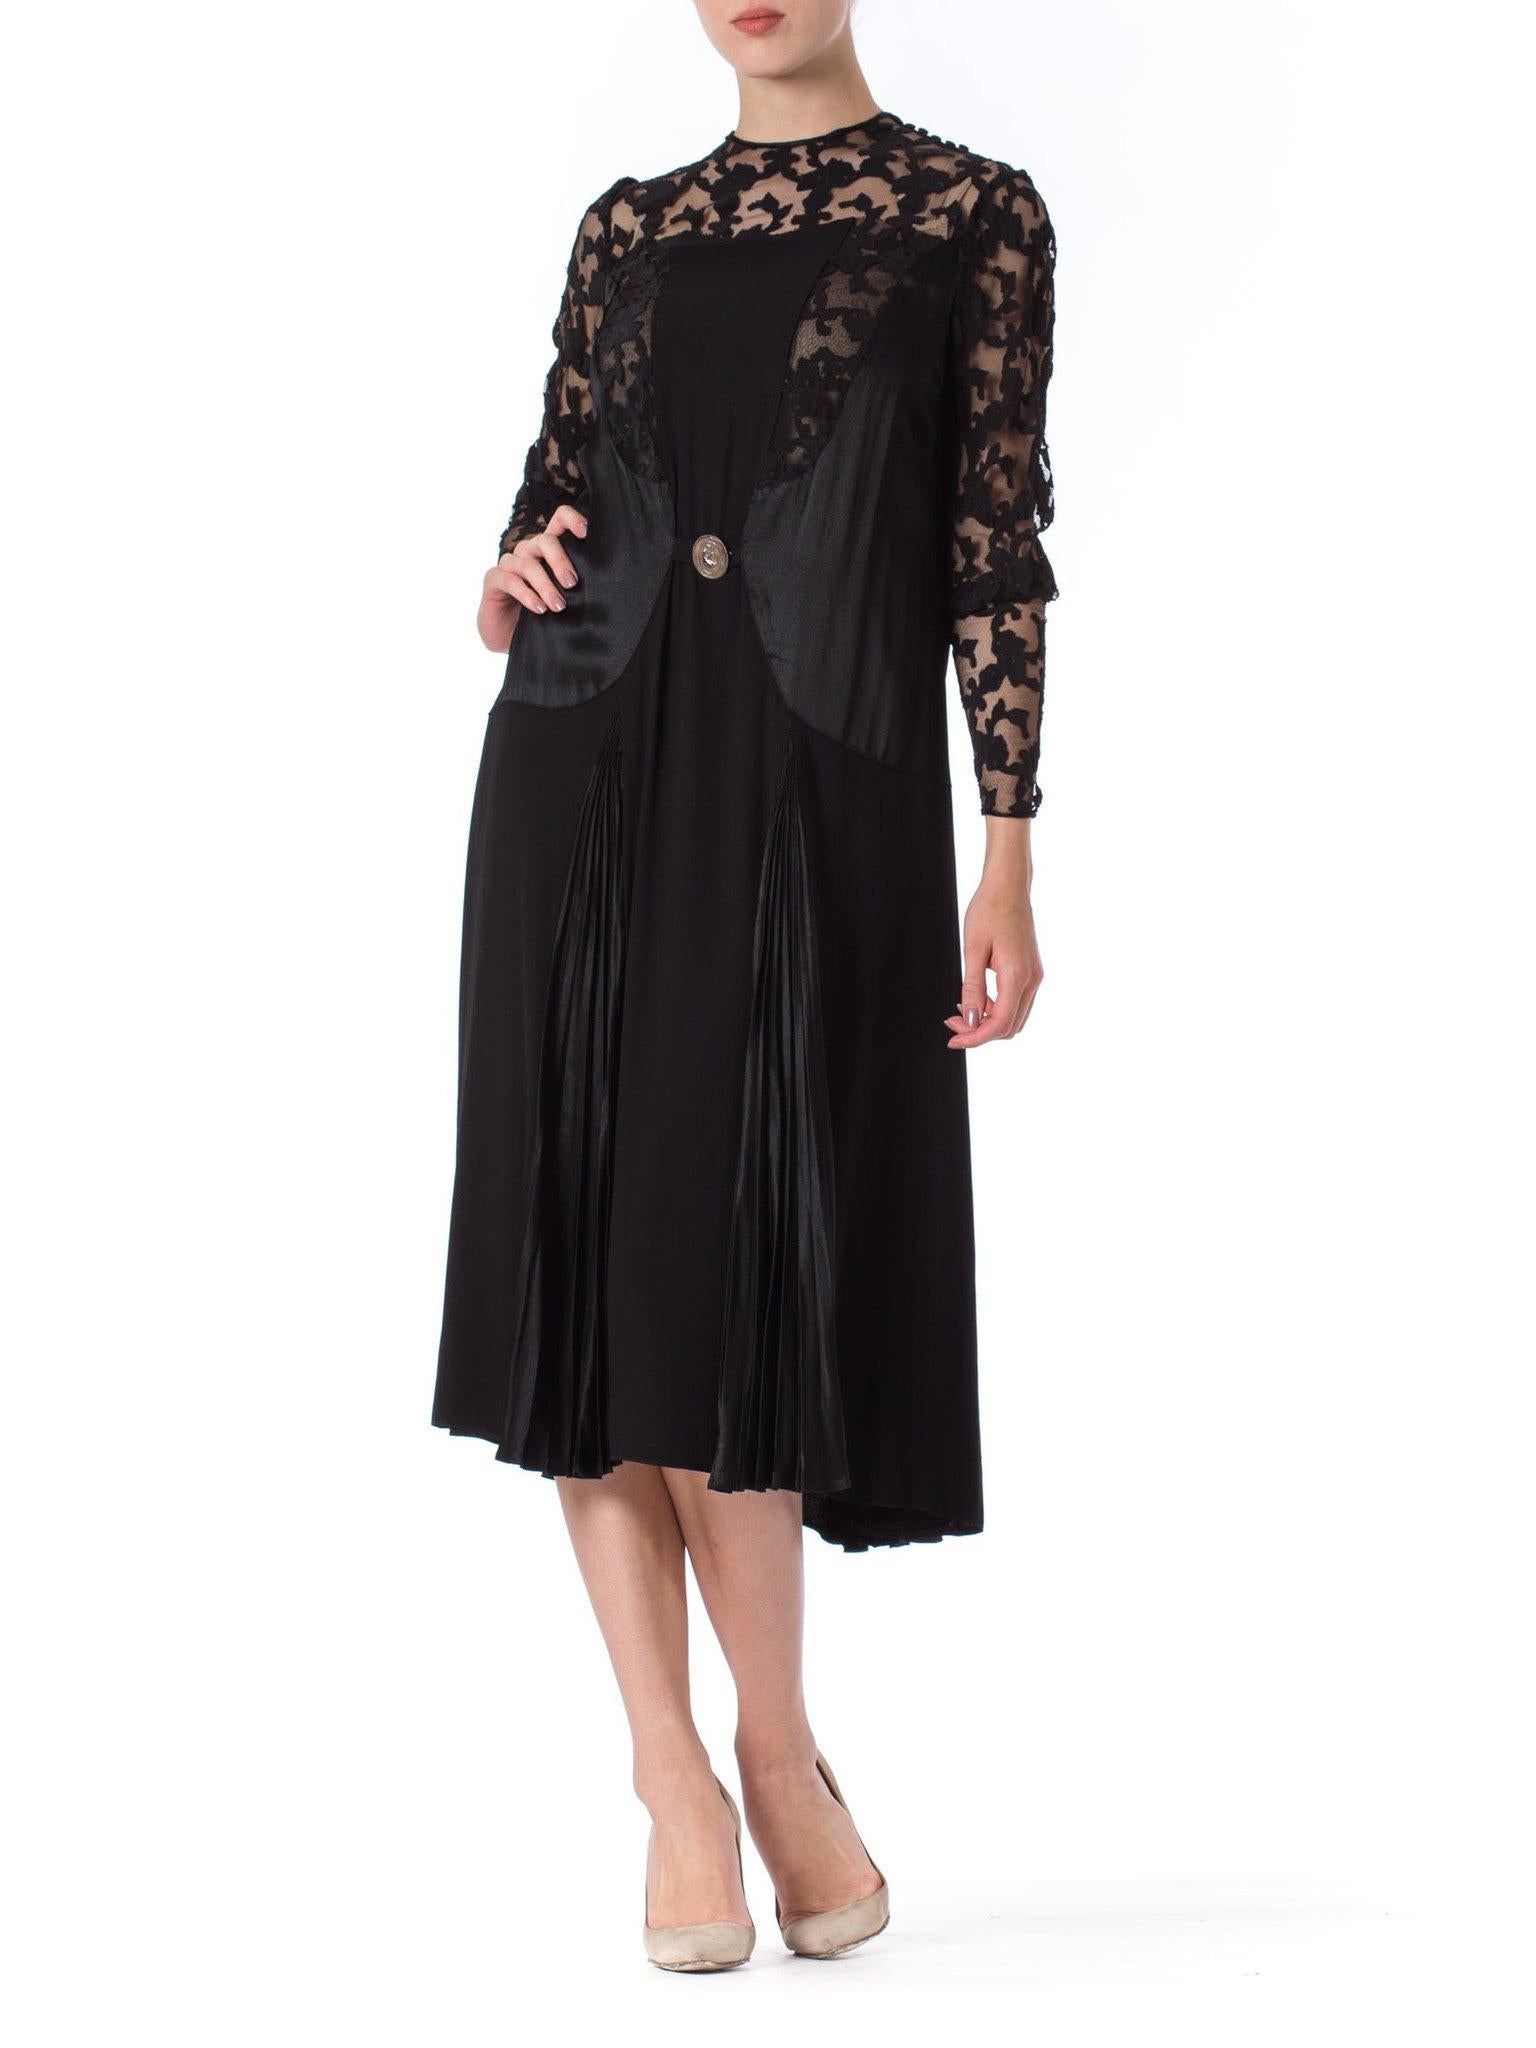 robe 1920S en crêpe de soie noir et filet appliqué avec de superbes manches à boucle